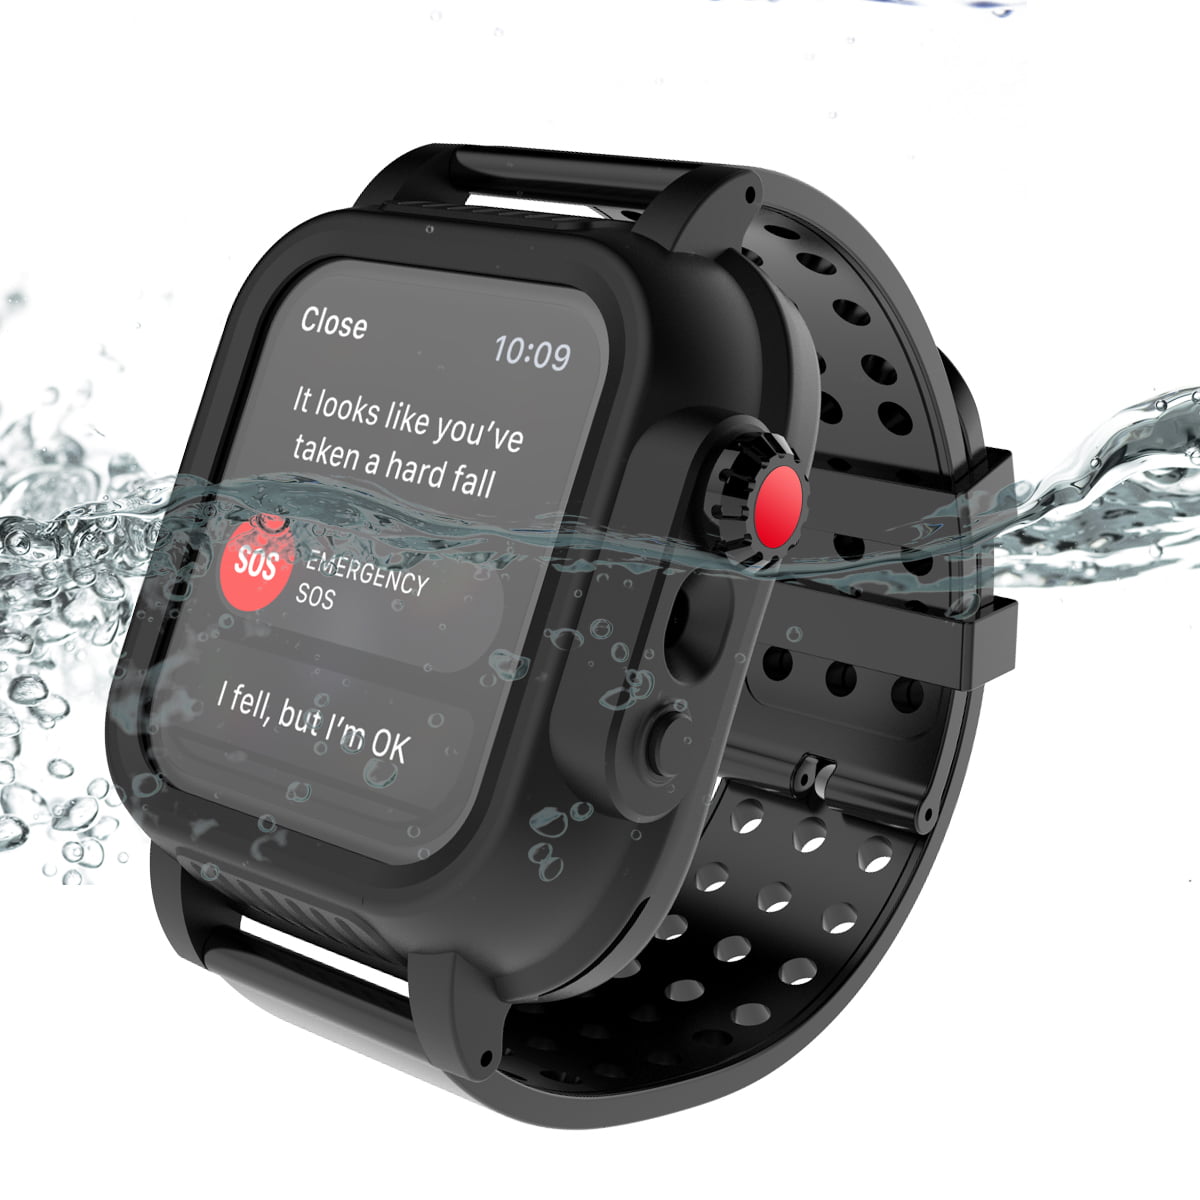 is apple watch 3 waterproof